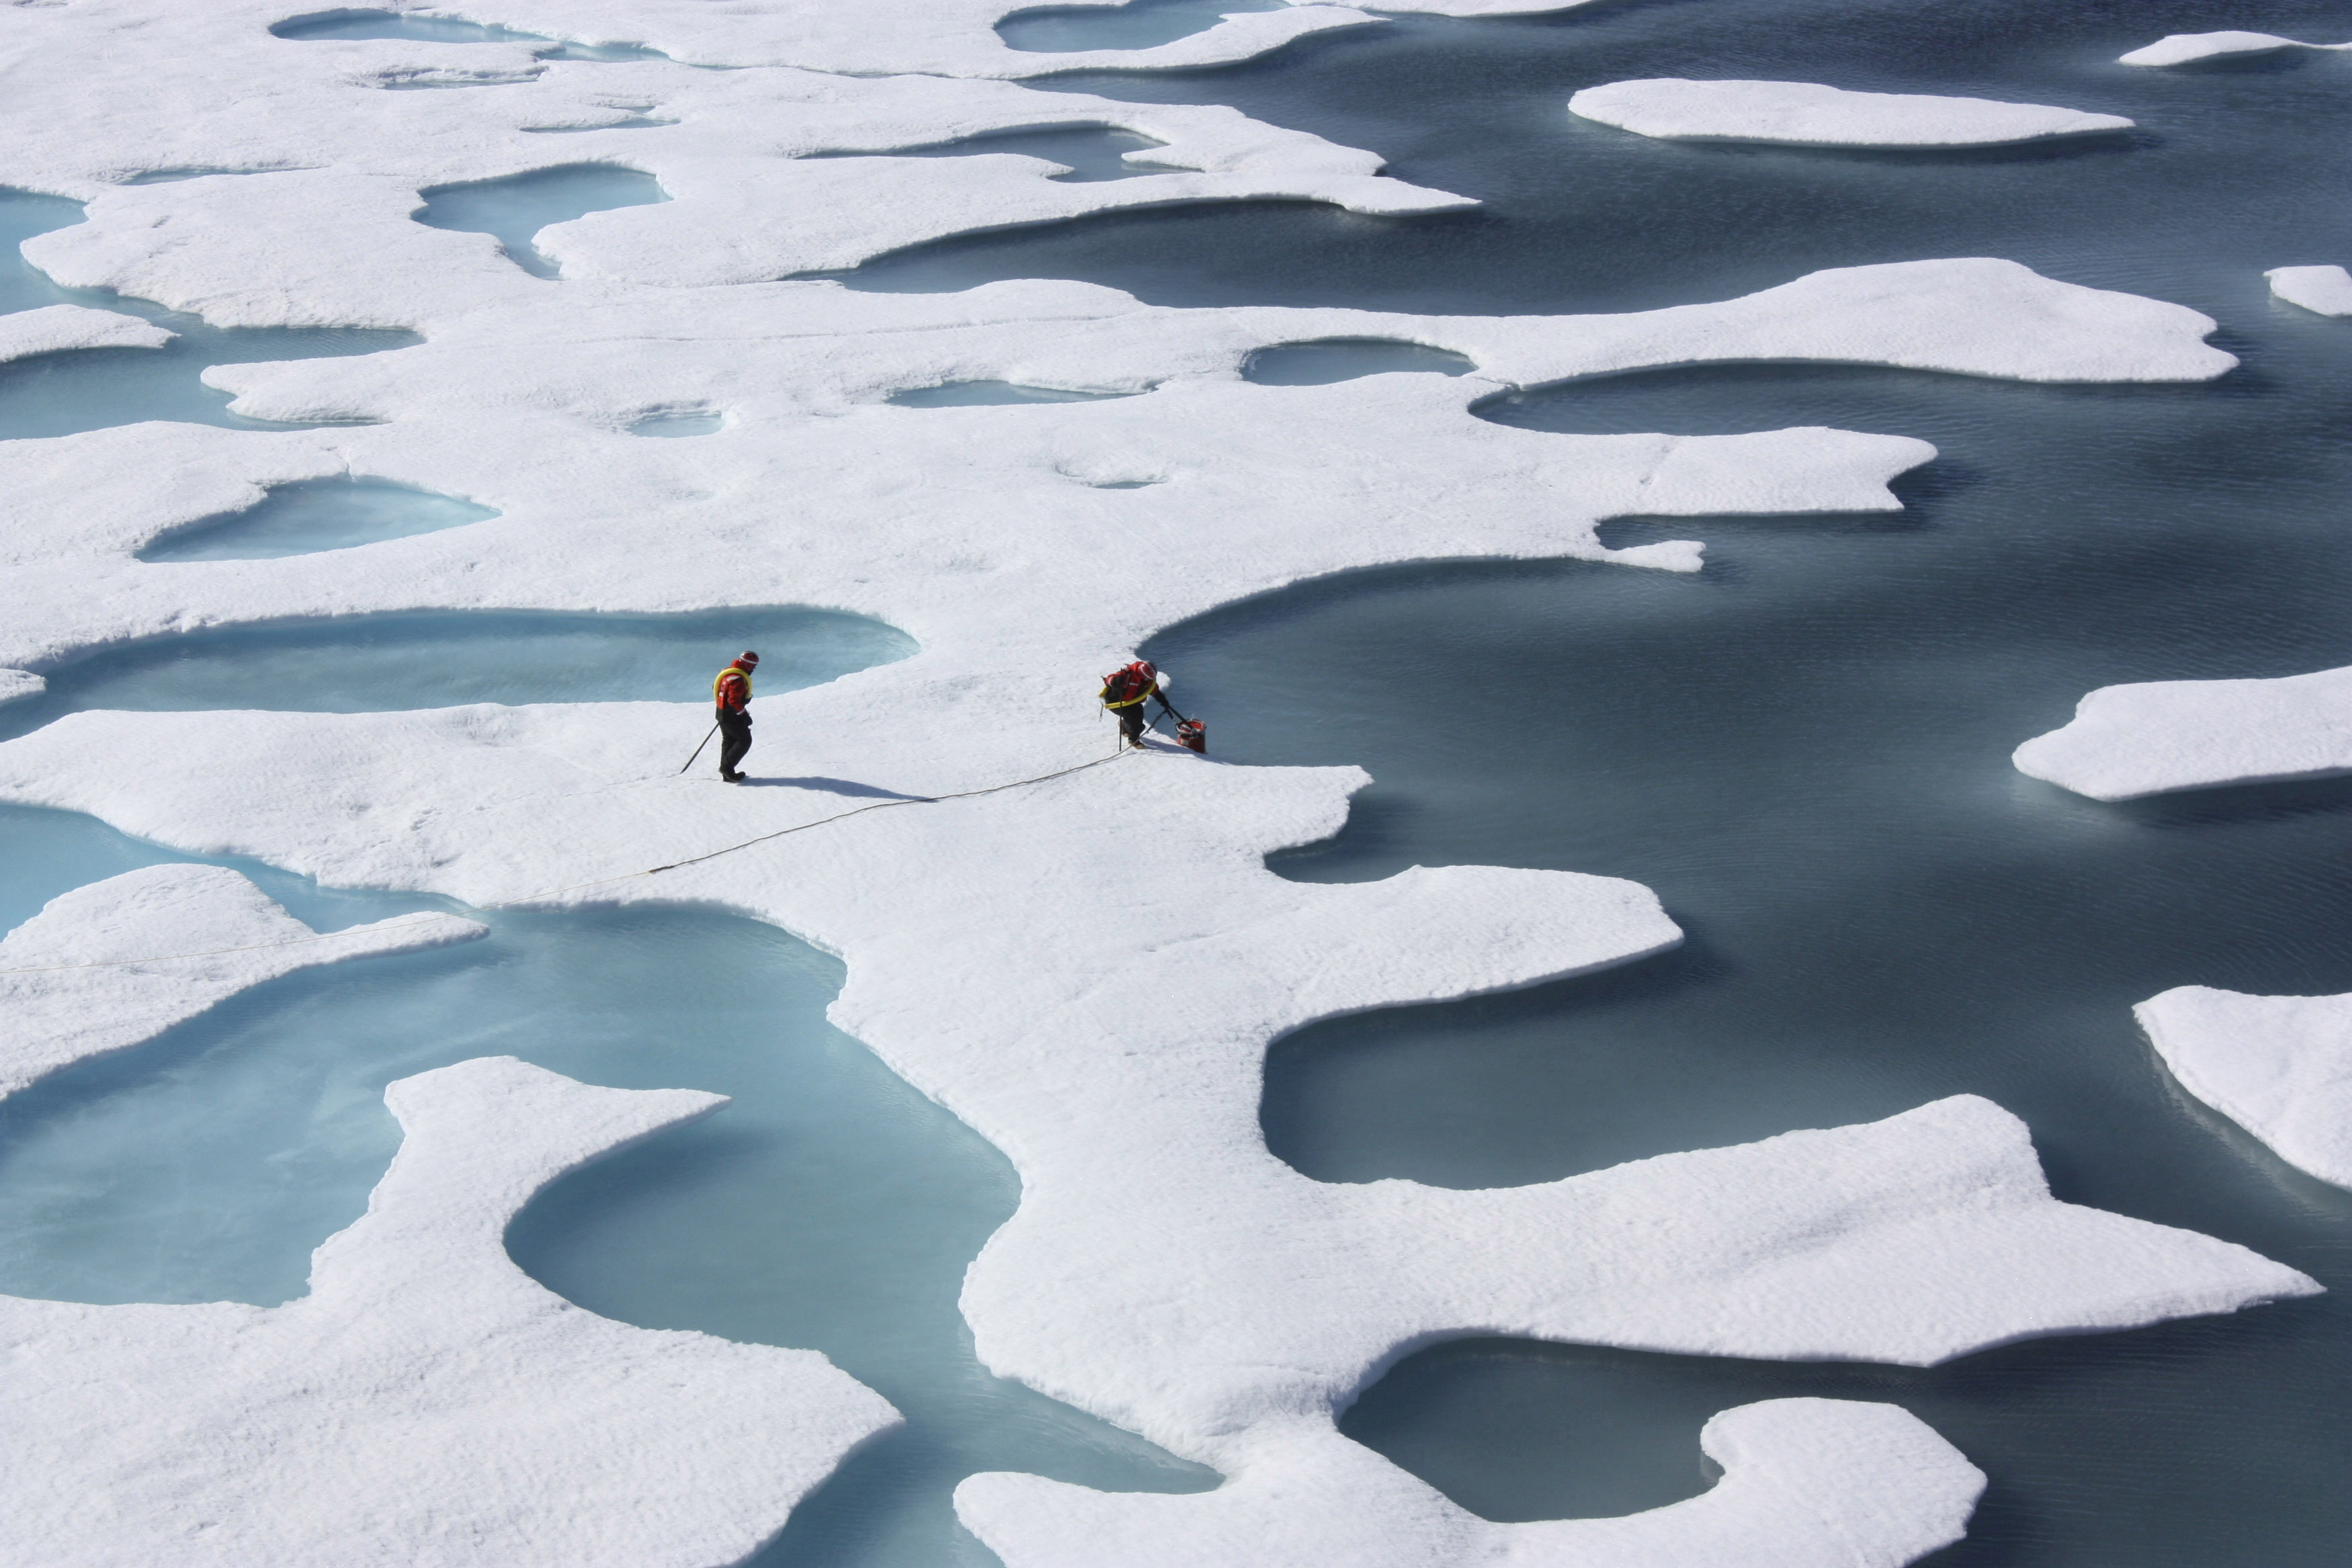 Κλιματική αλλαγή: Σε «καταστροφικά» επίπεδα η απώλεια πάγων στους πόλους